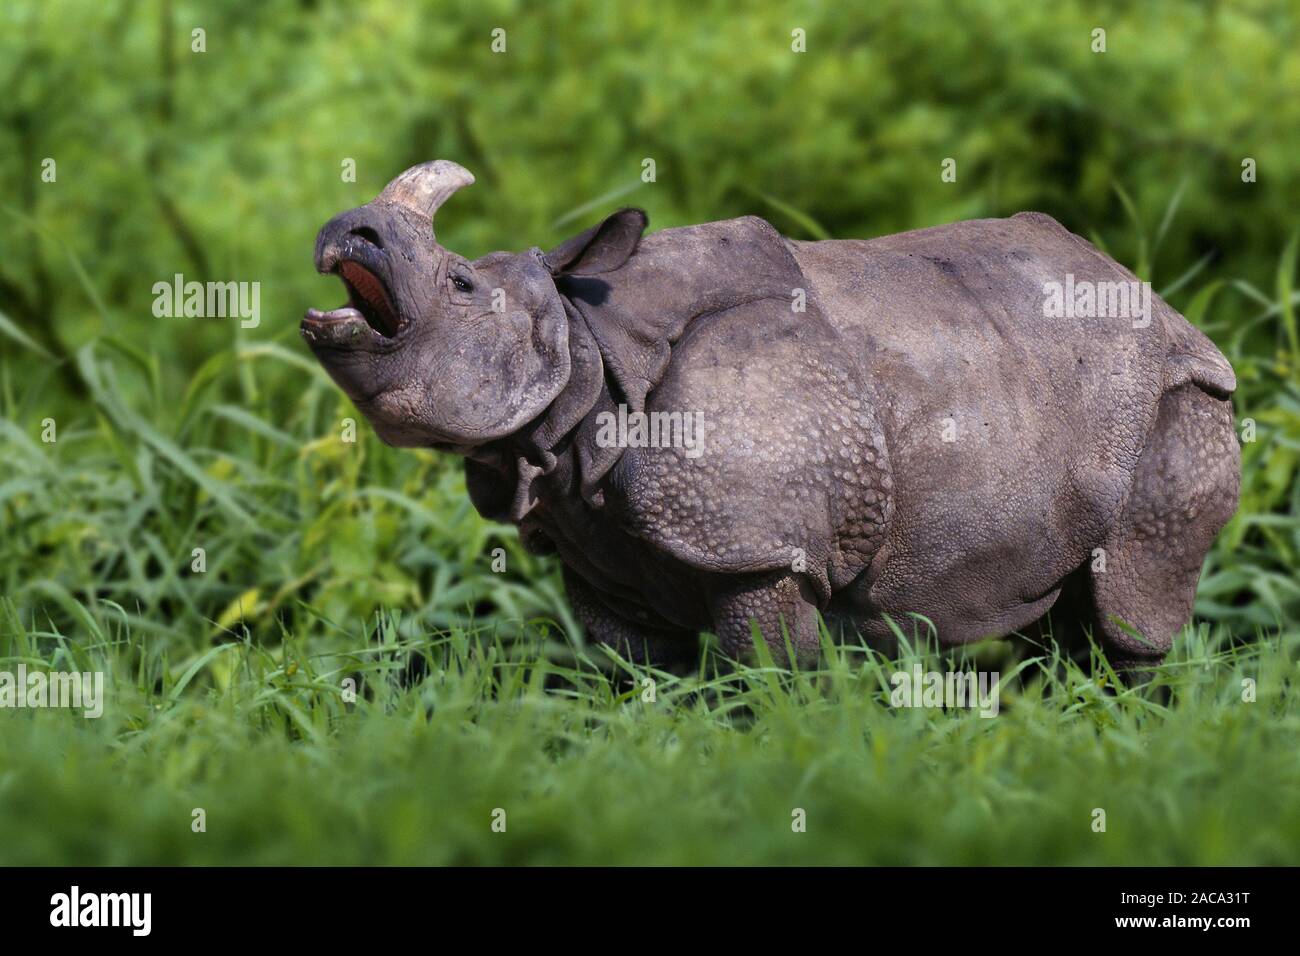 Panzernashorn, flehmend, Rhinocerus unicornis, Great Indian Rhinoceros, Great One-horned Rhinoceros Stock Photo